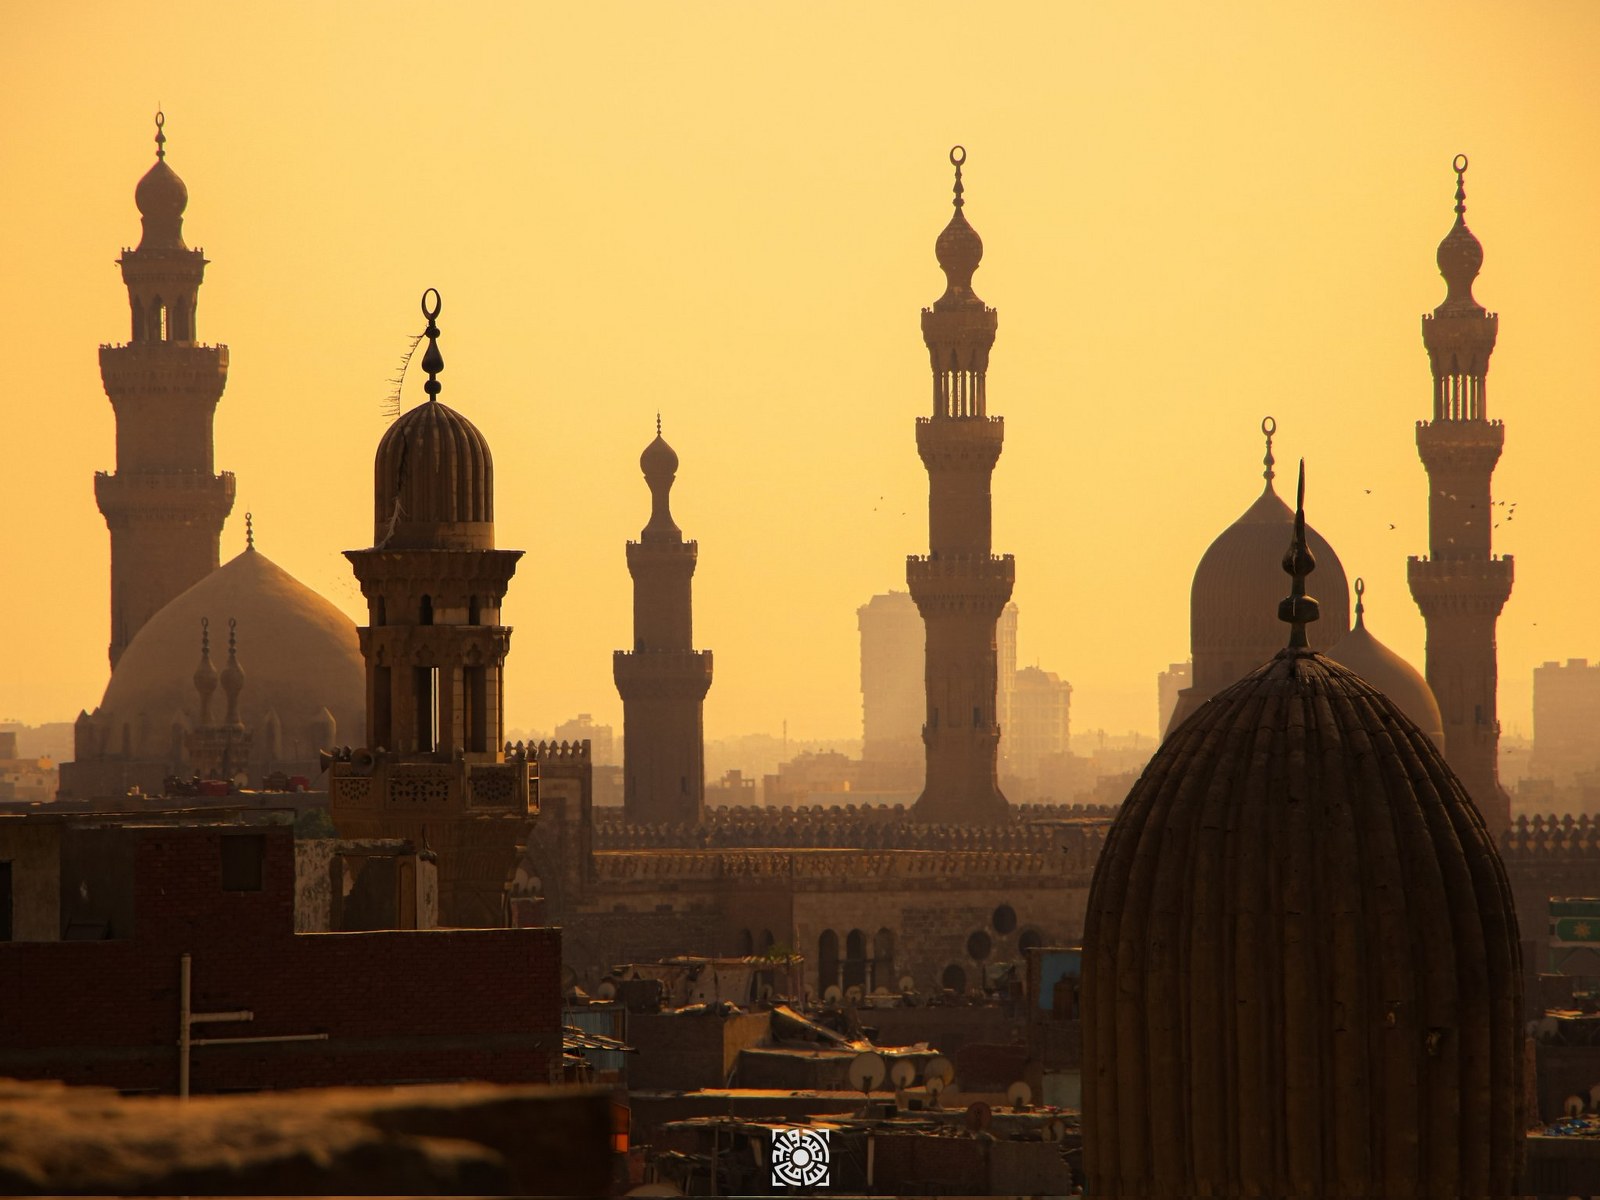 Ahmed Samy Photographs Cairo's Minarets